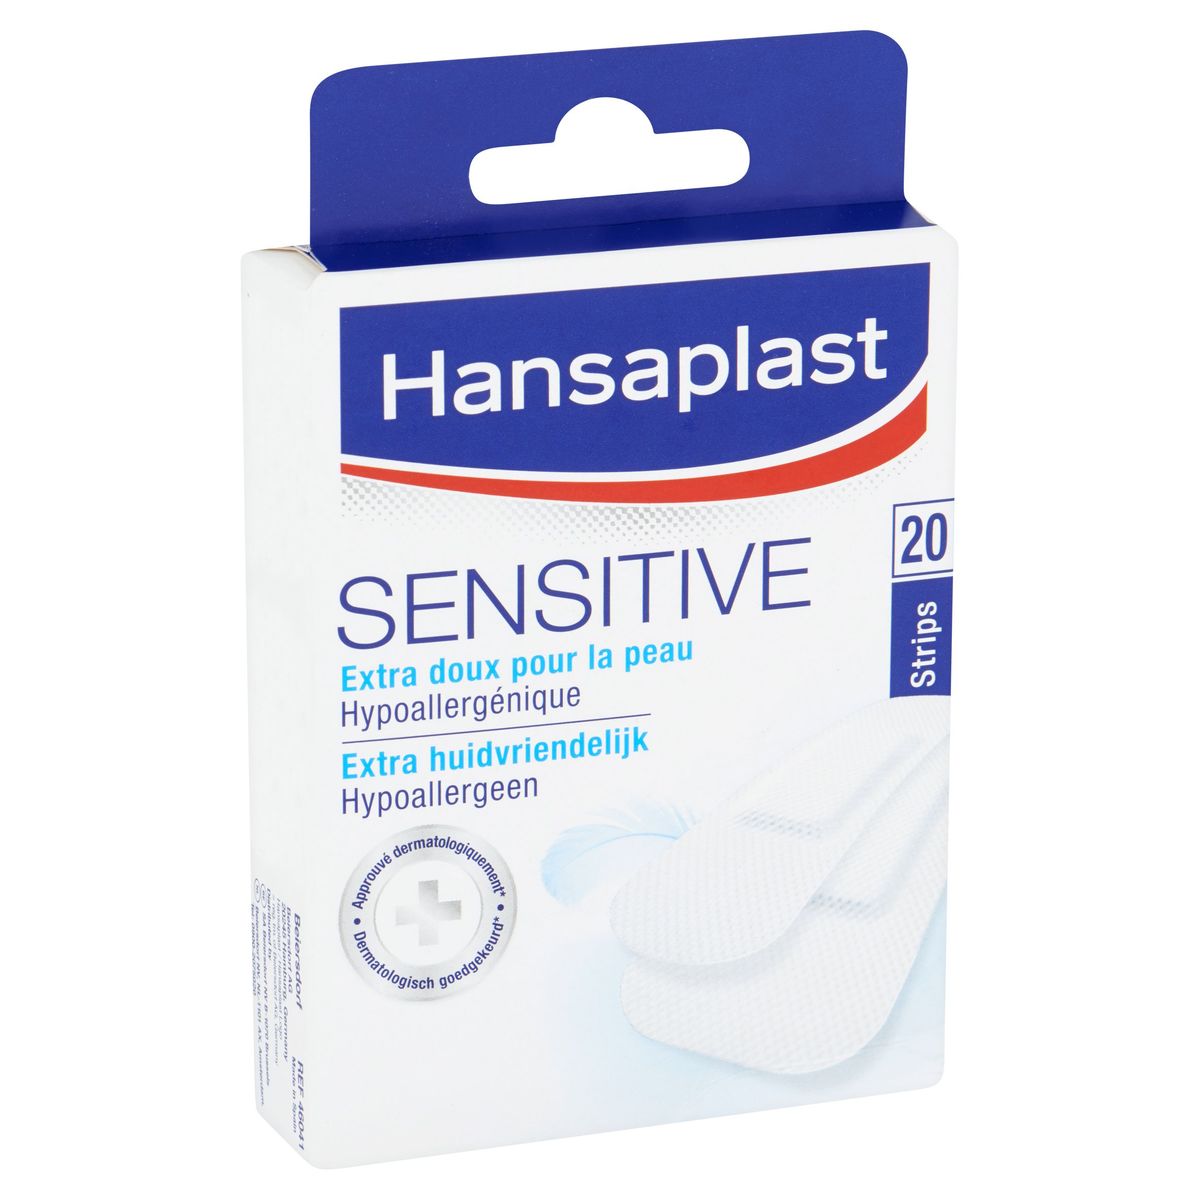 Hansaplast Sensitive Hypoallergeen 20 Strips